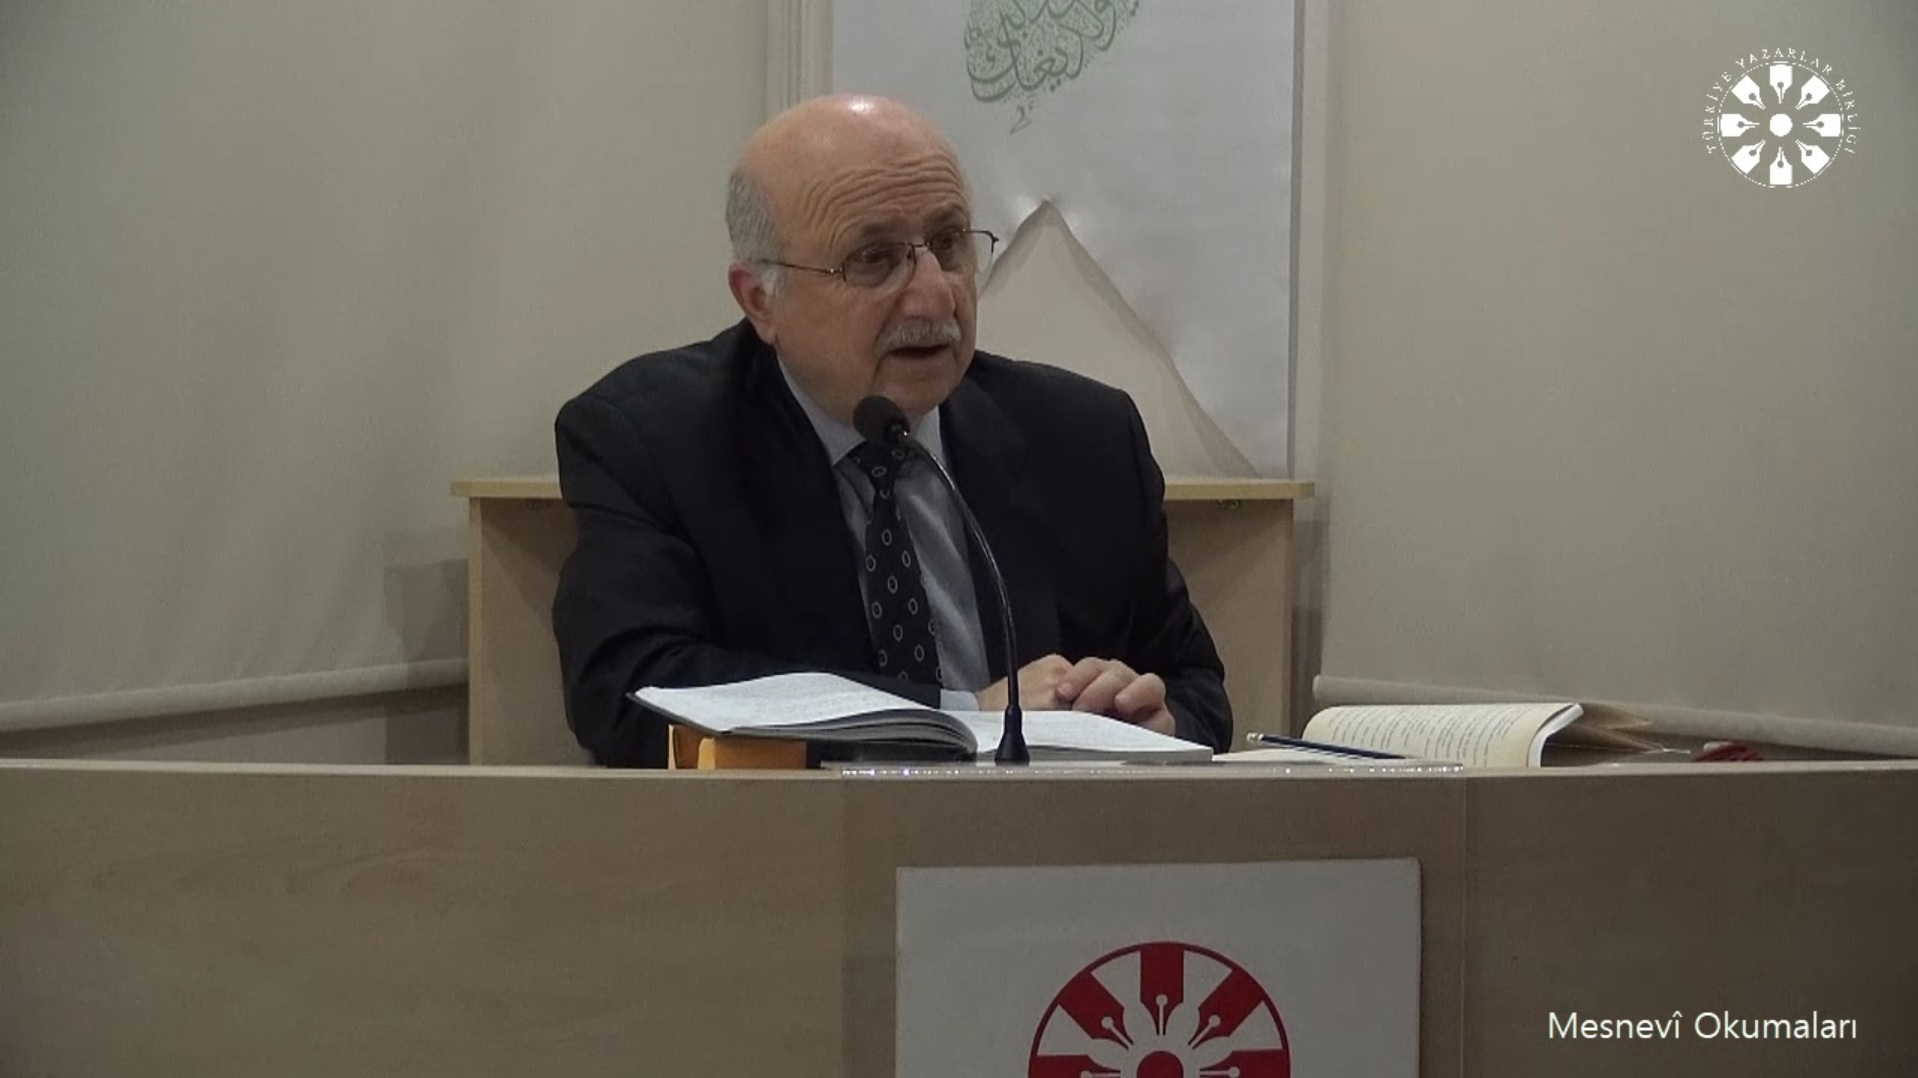 Mesnevî Okumaları -182- Prof. Dr. Adnan Karaismailoğlu